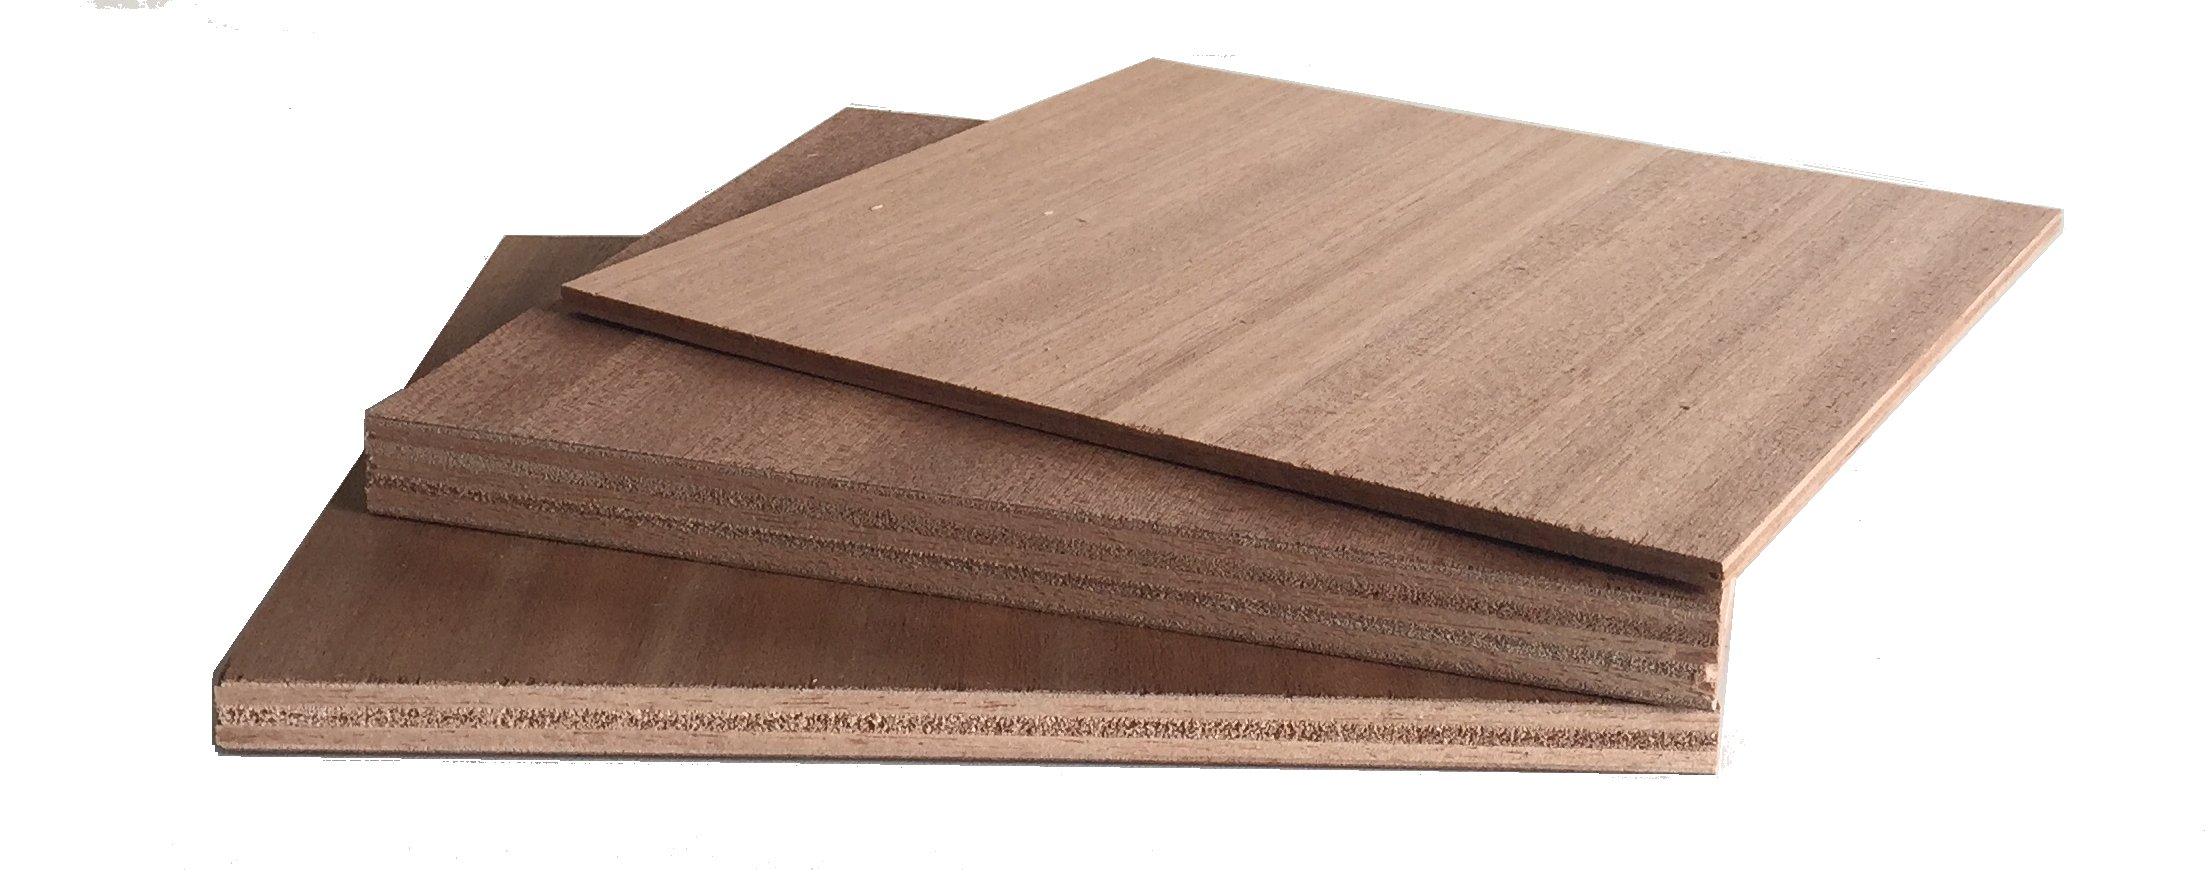 Sapeli-mahogany plywood